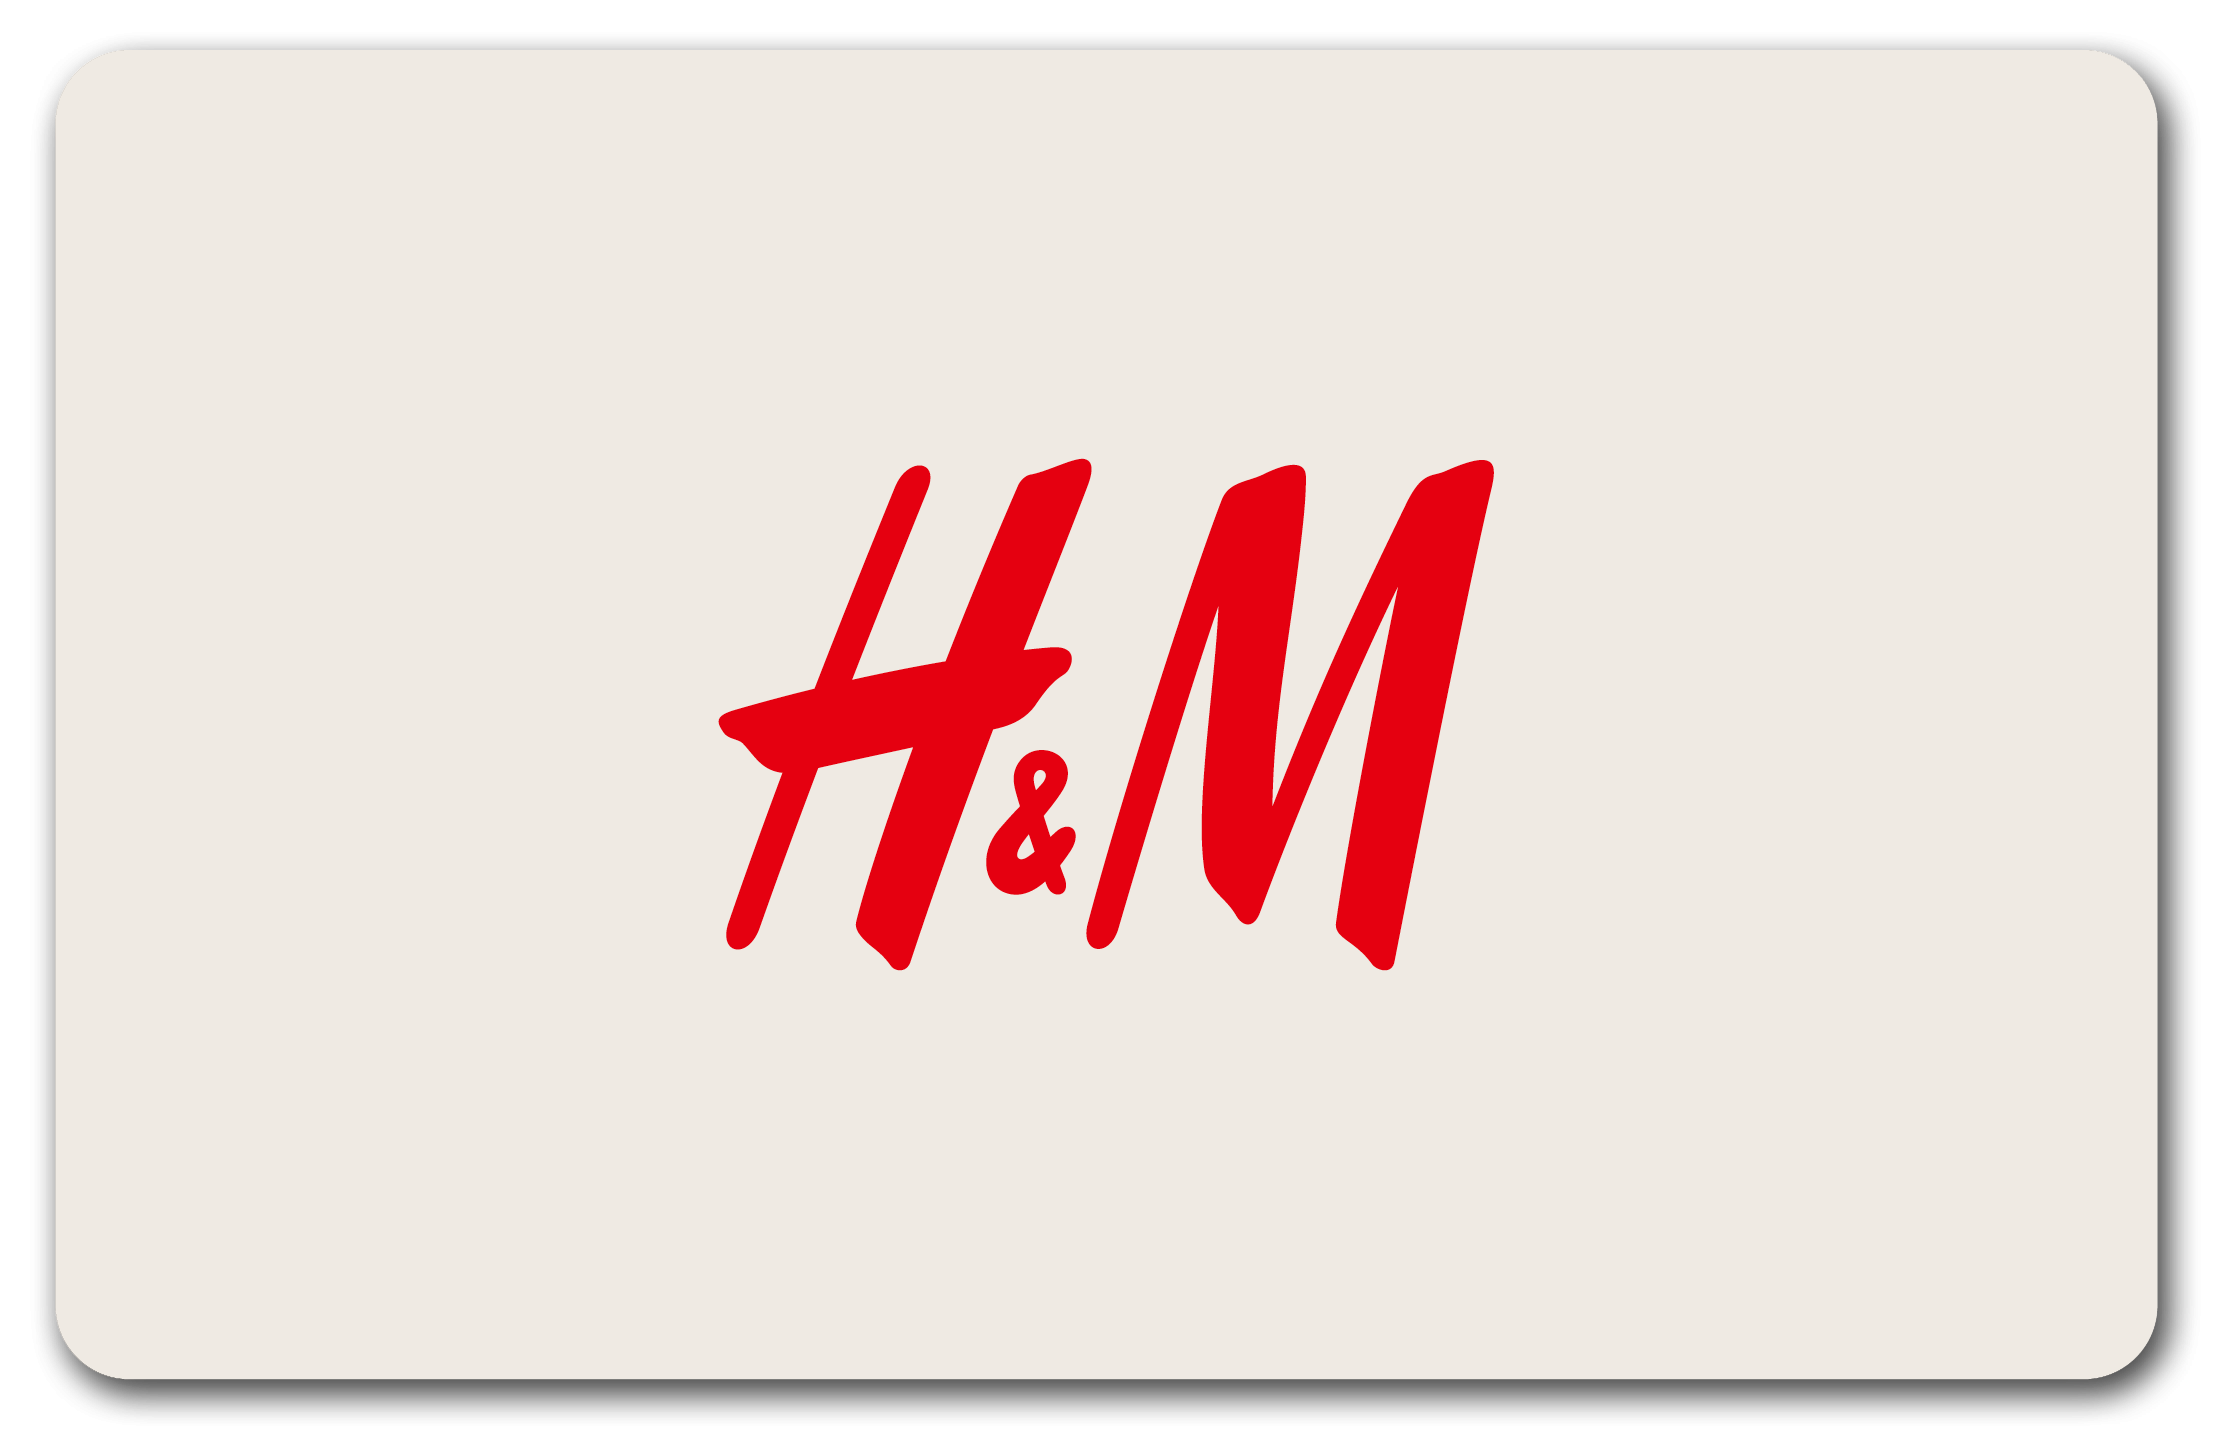 H&M Saint-Brieuc